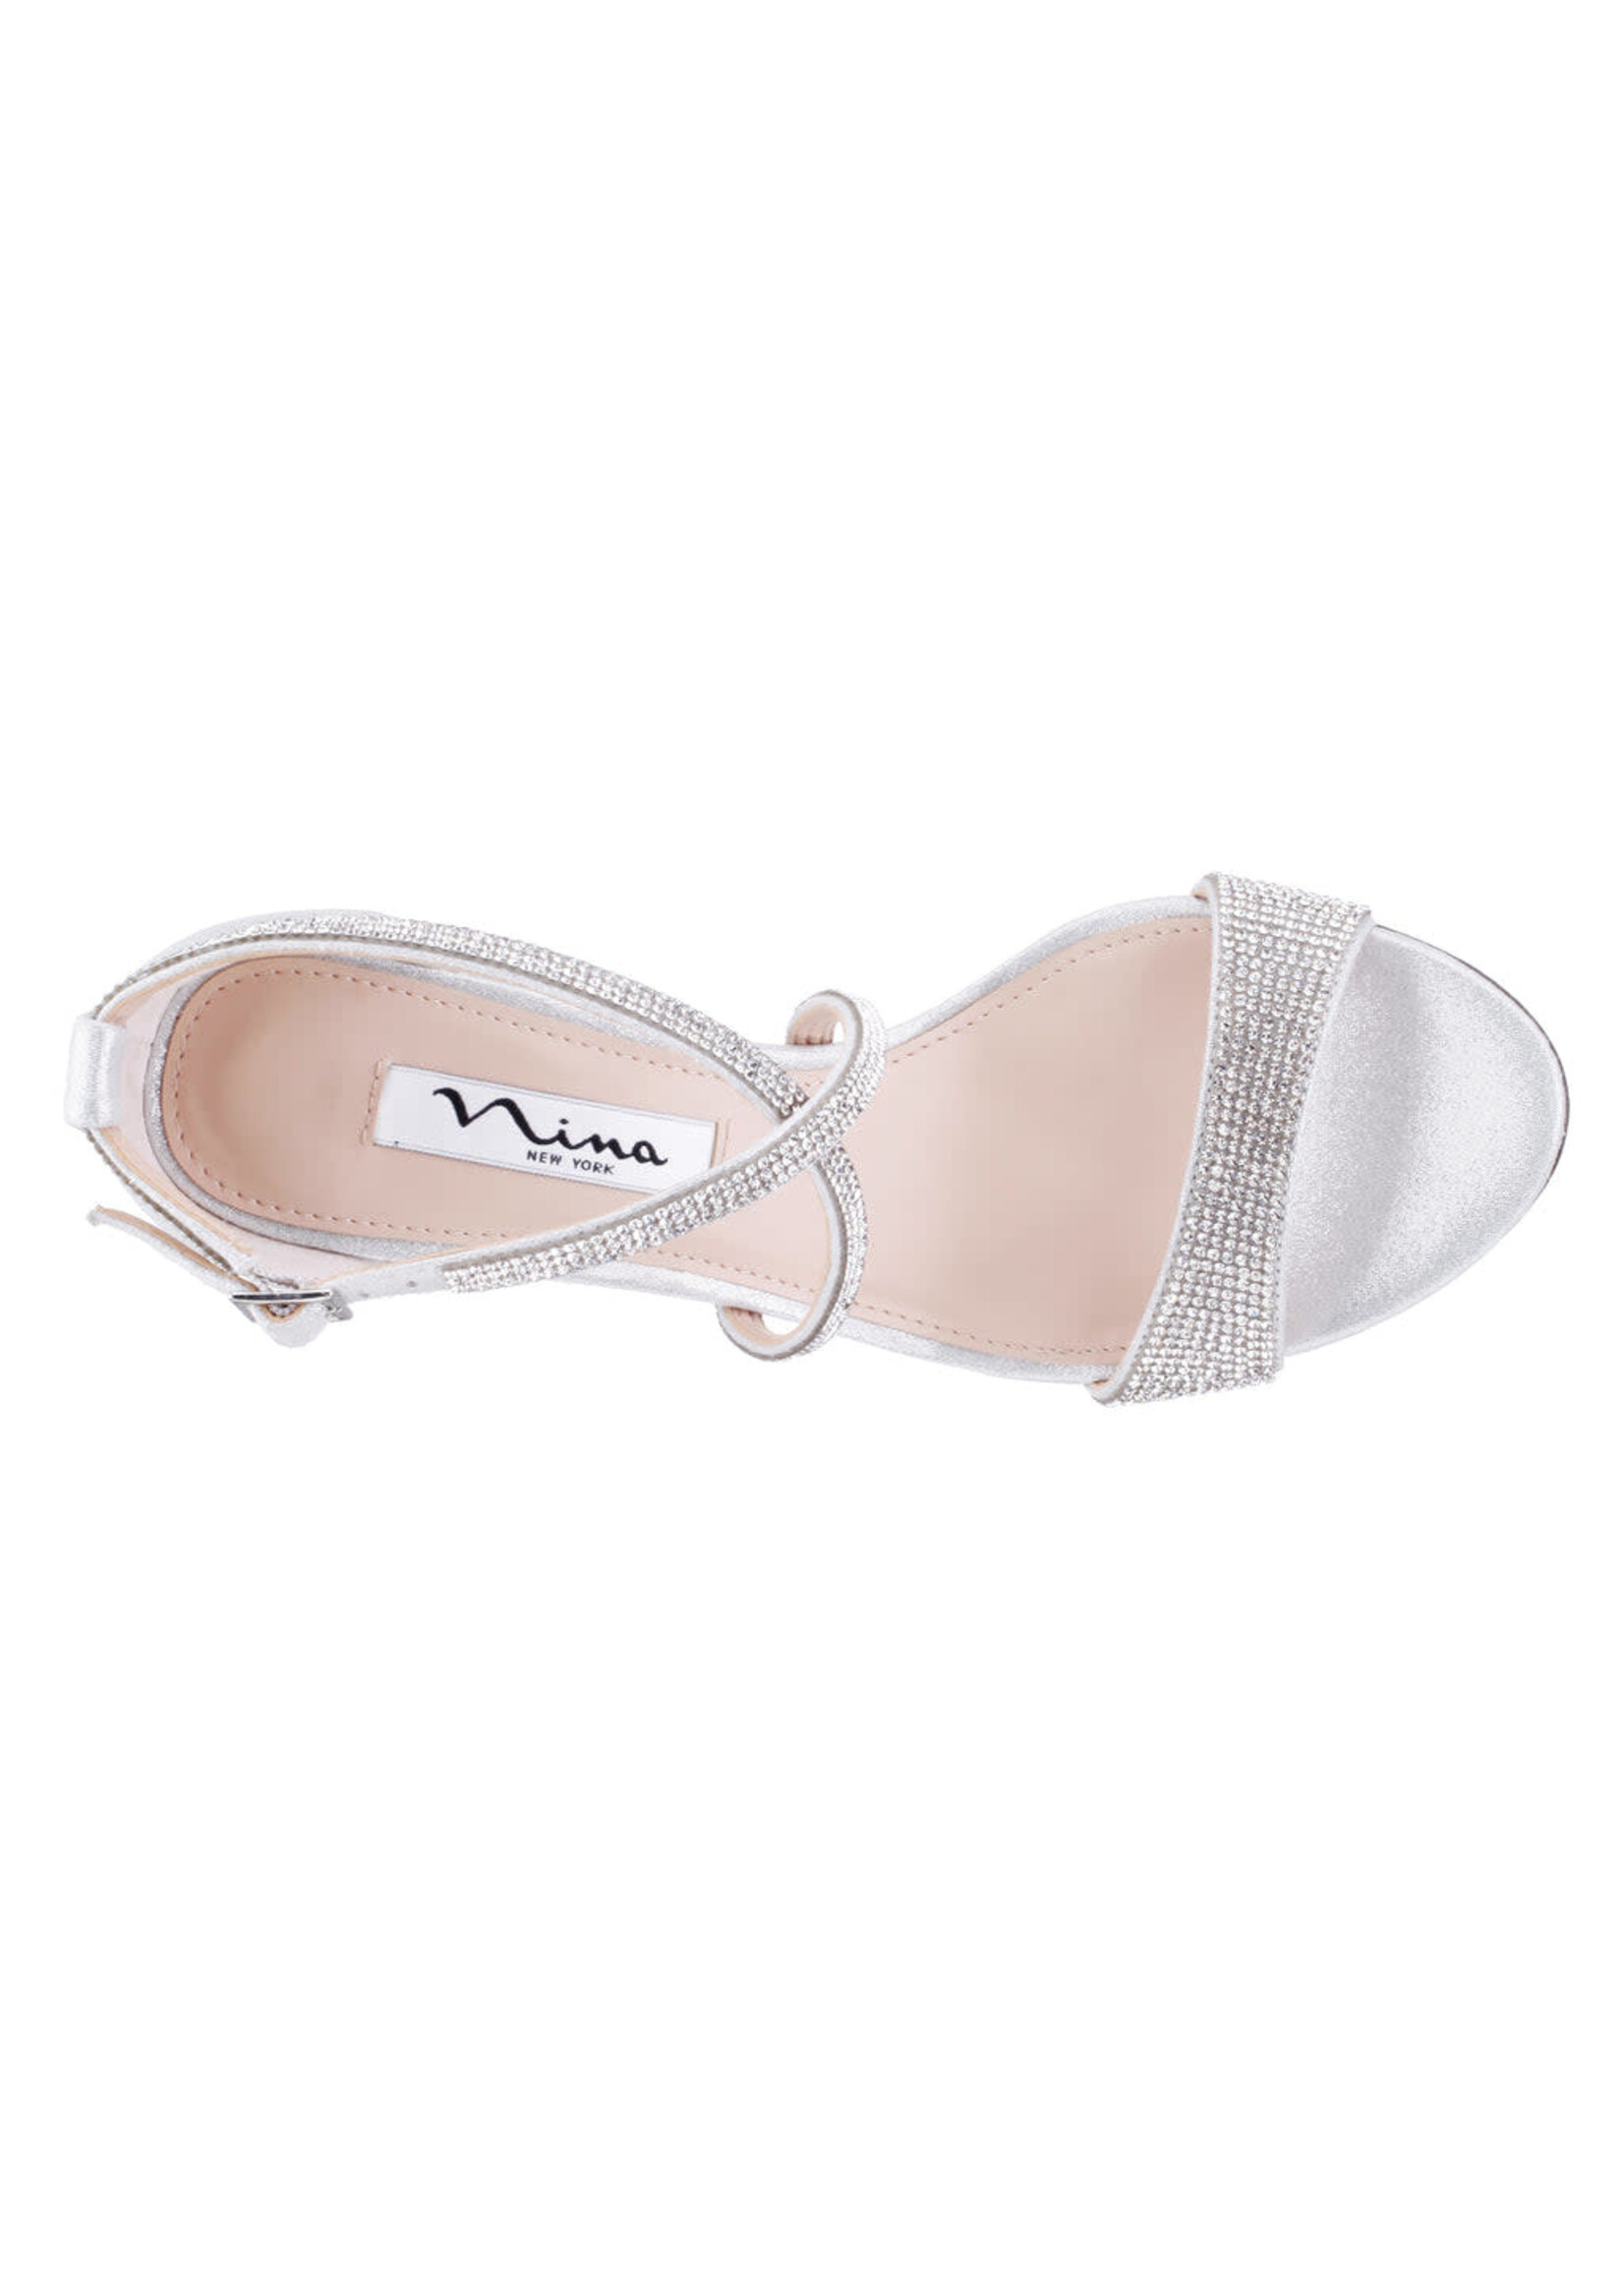 Nina Footwear Henesi True Silver Reflective by Nina Footwear